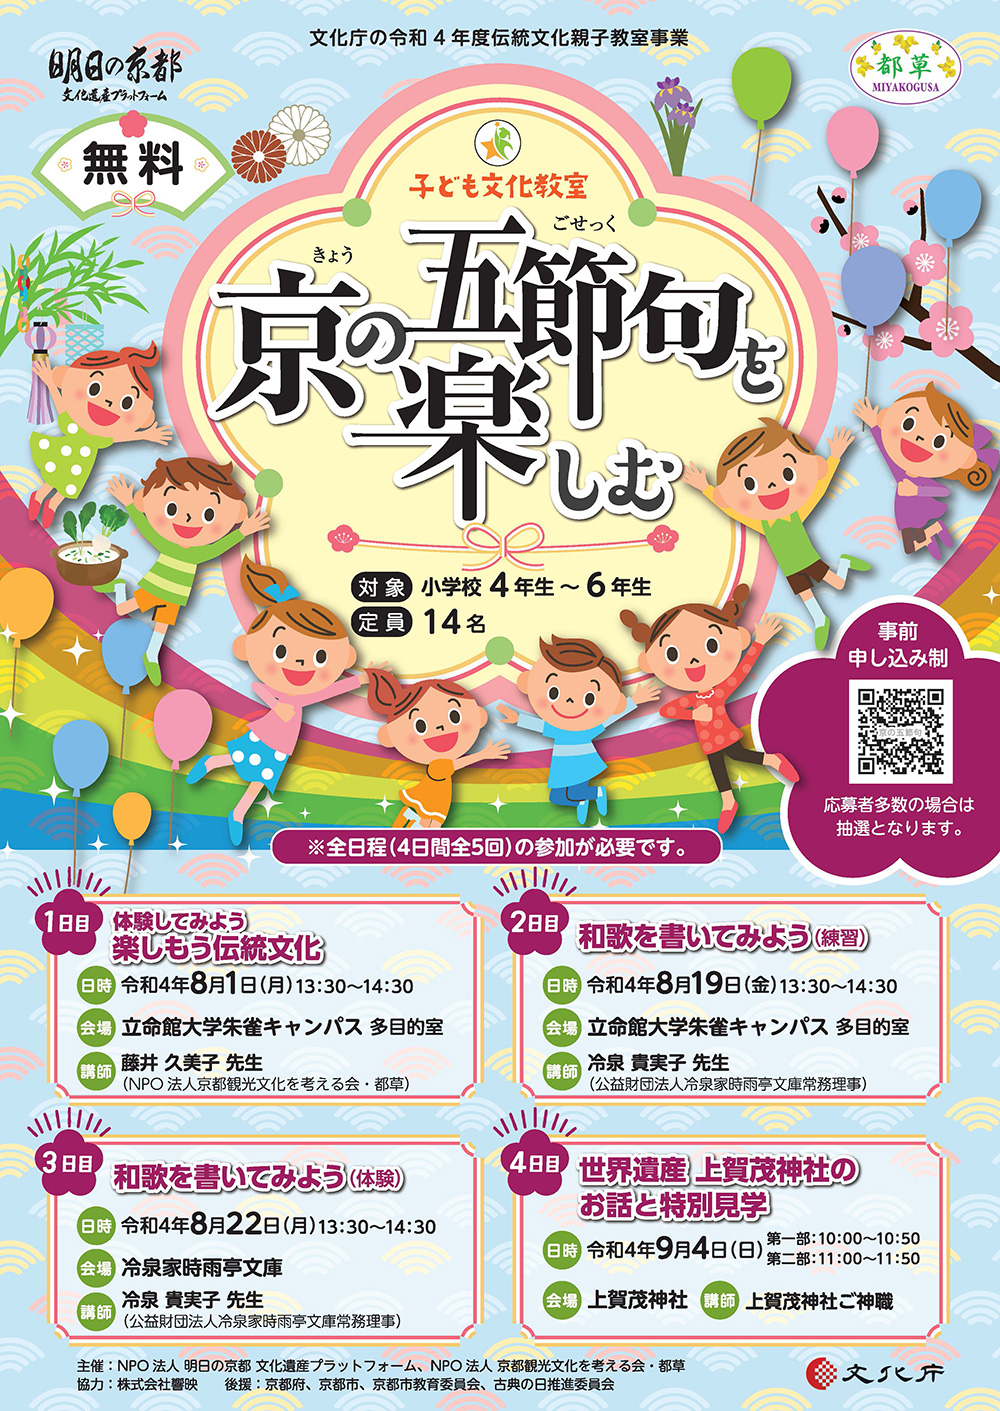 子ども文化教室「京の五節句を楽しむ」を開催します